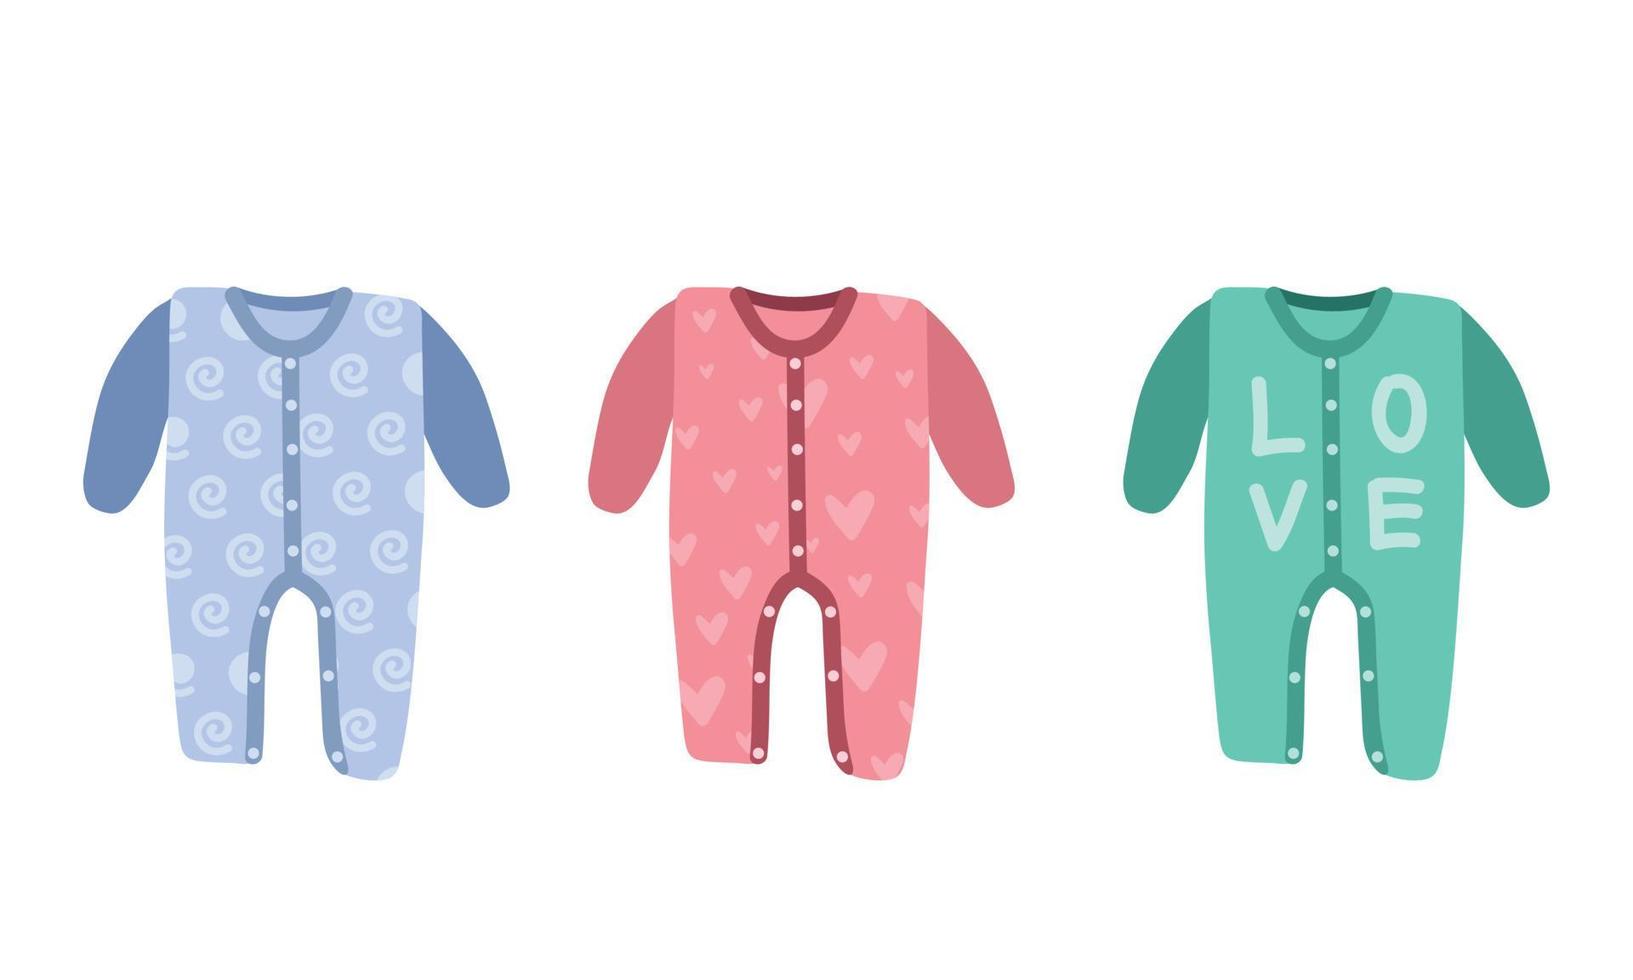 conjunto de vetores de clipart babygrow. pijama de bebê fofo simples, macacão, macacão, ilustração vetorial plana de macacão. babygrow roupas infantis para o estilo de desenho animado do bebê dormindo. crianças, chá de bebê, recém-nascido